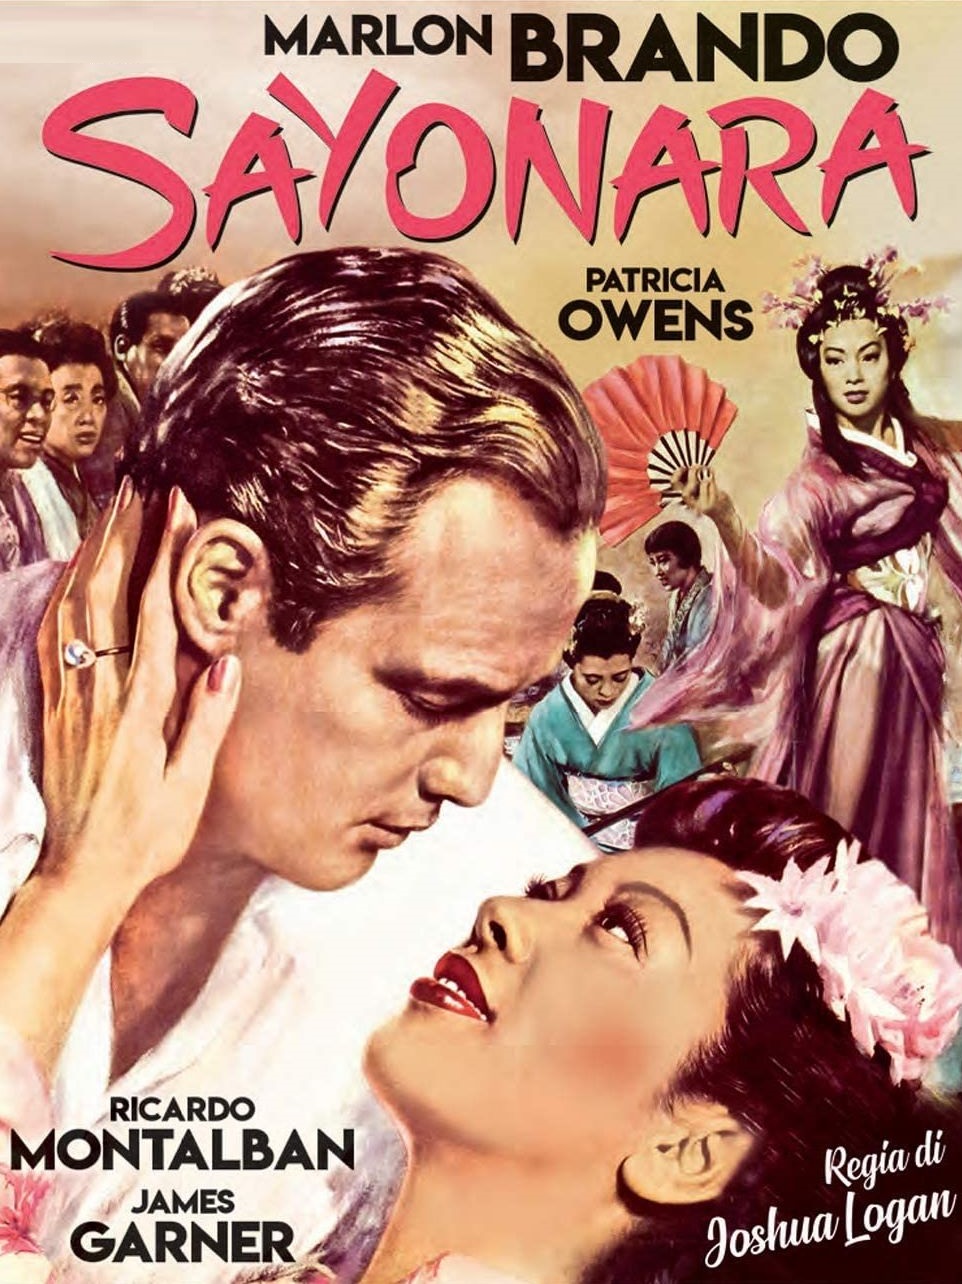 Sayonara [HD] (1957)